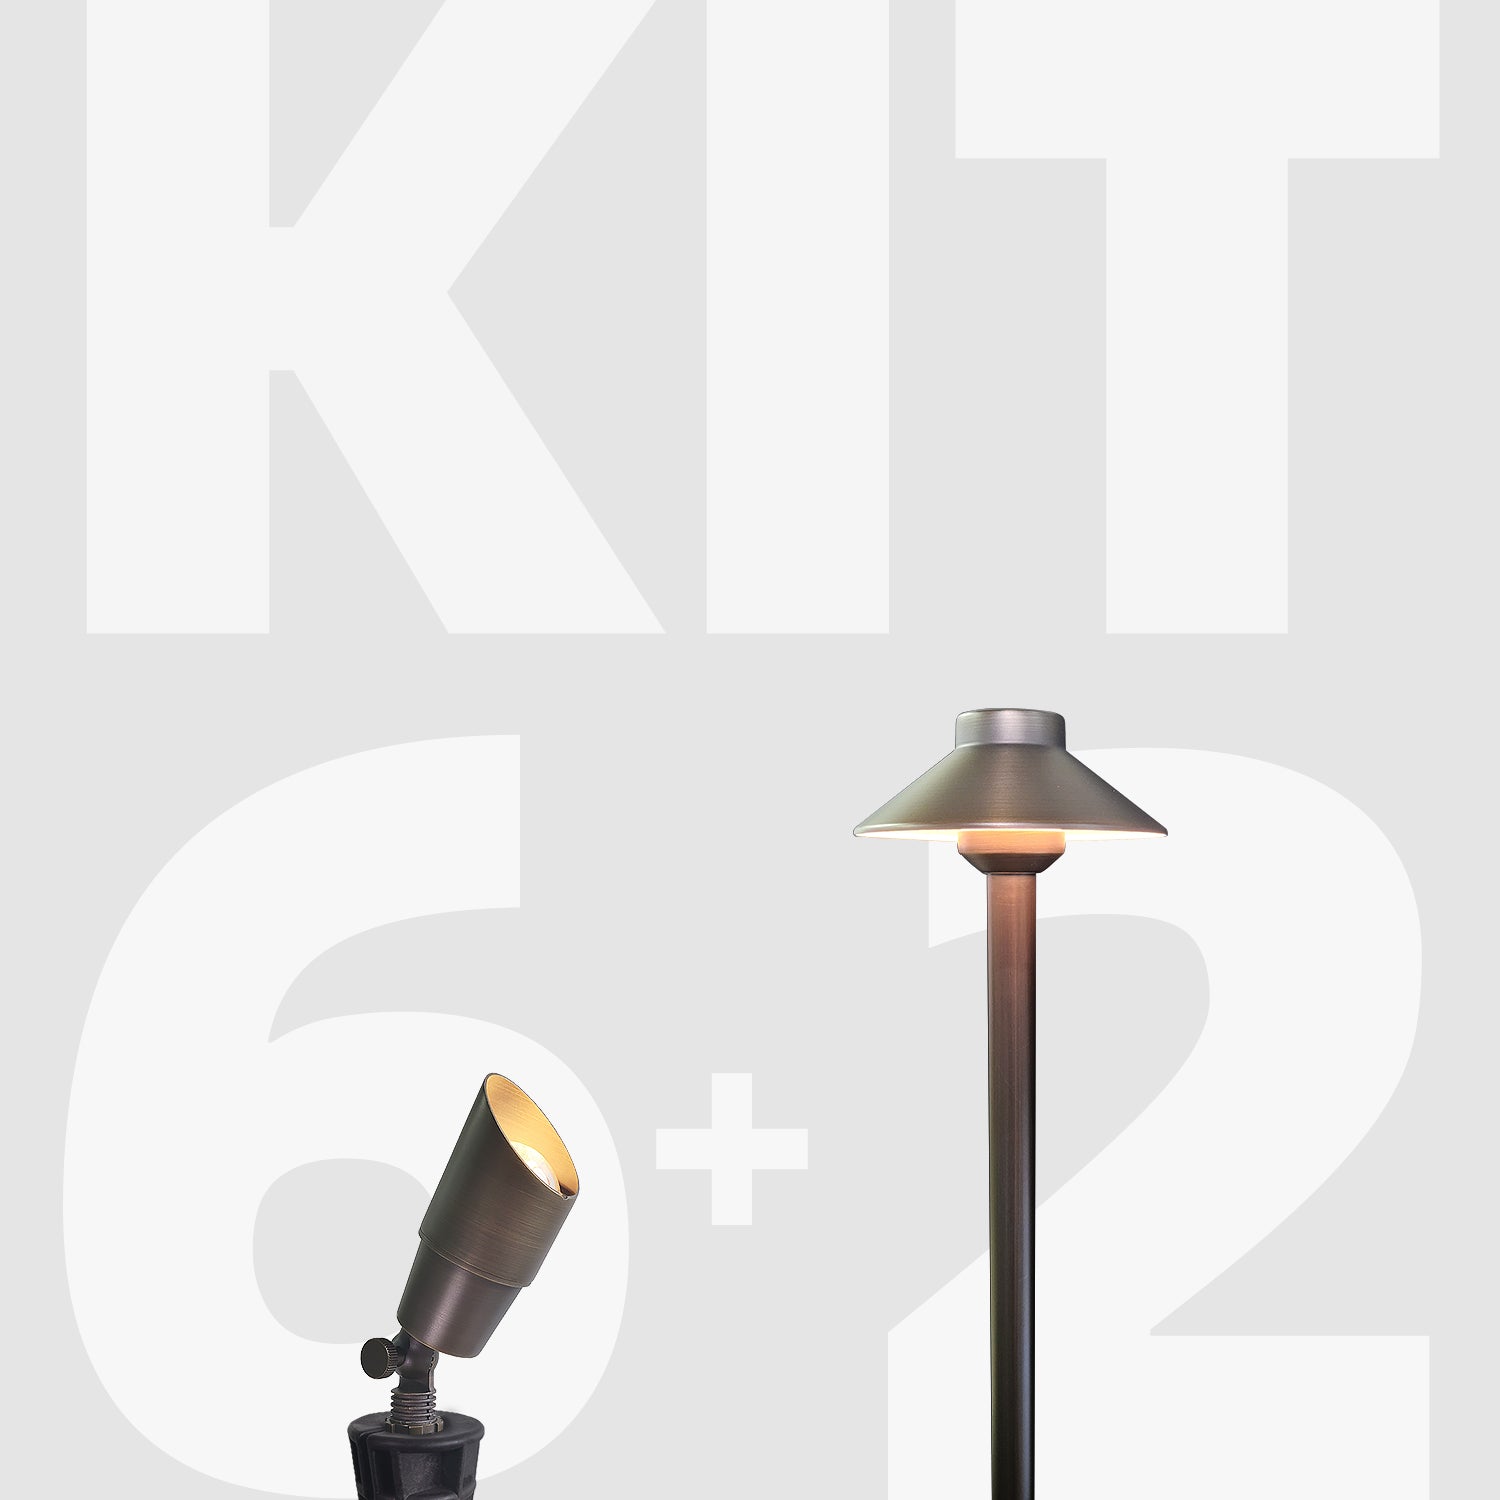 Cast Brass LED Landscape Lighting | 12V Low Voltage Waterproof Outdoor Lights Kit KIT-4